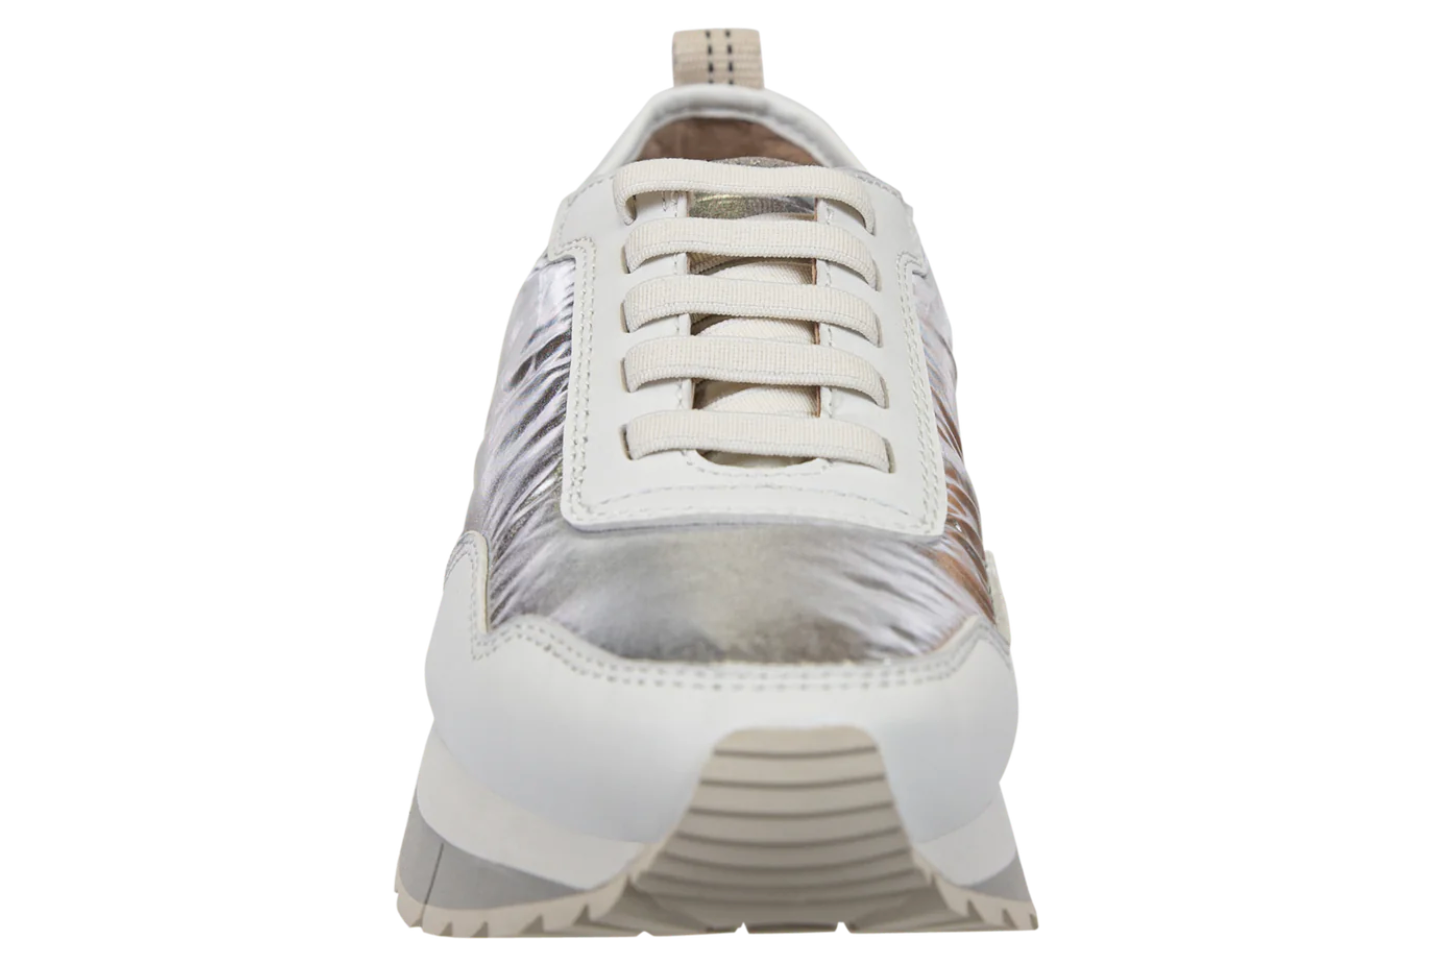 Kinetic Sneaker - Silver